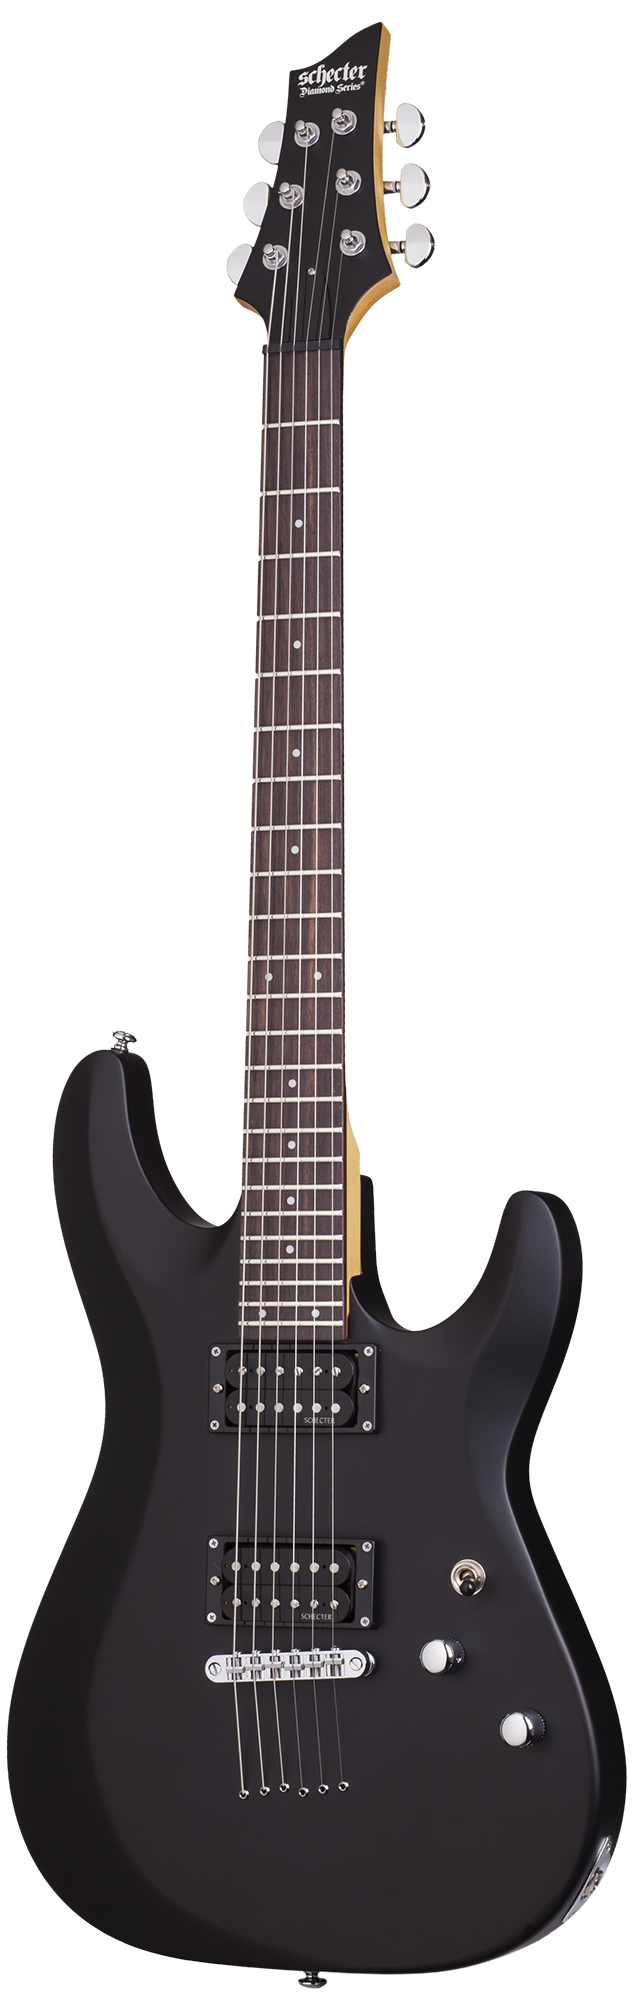 Schecter C-6 Deluxe Гитара электрическая купить в prostore.me